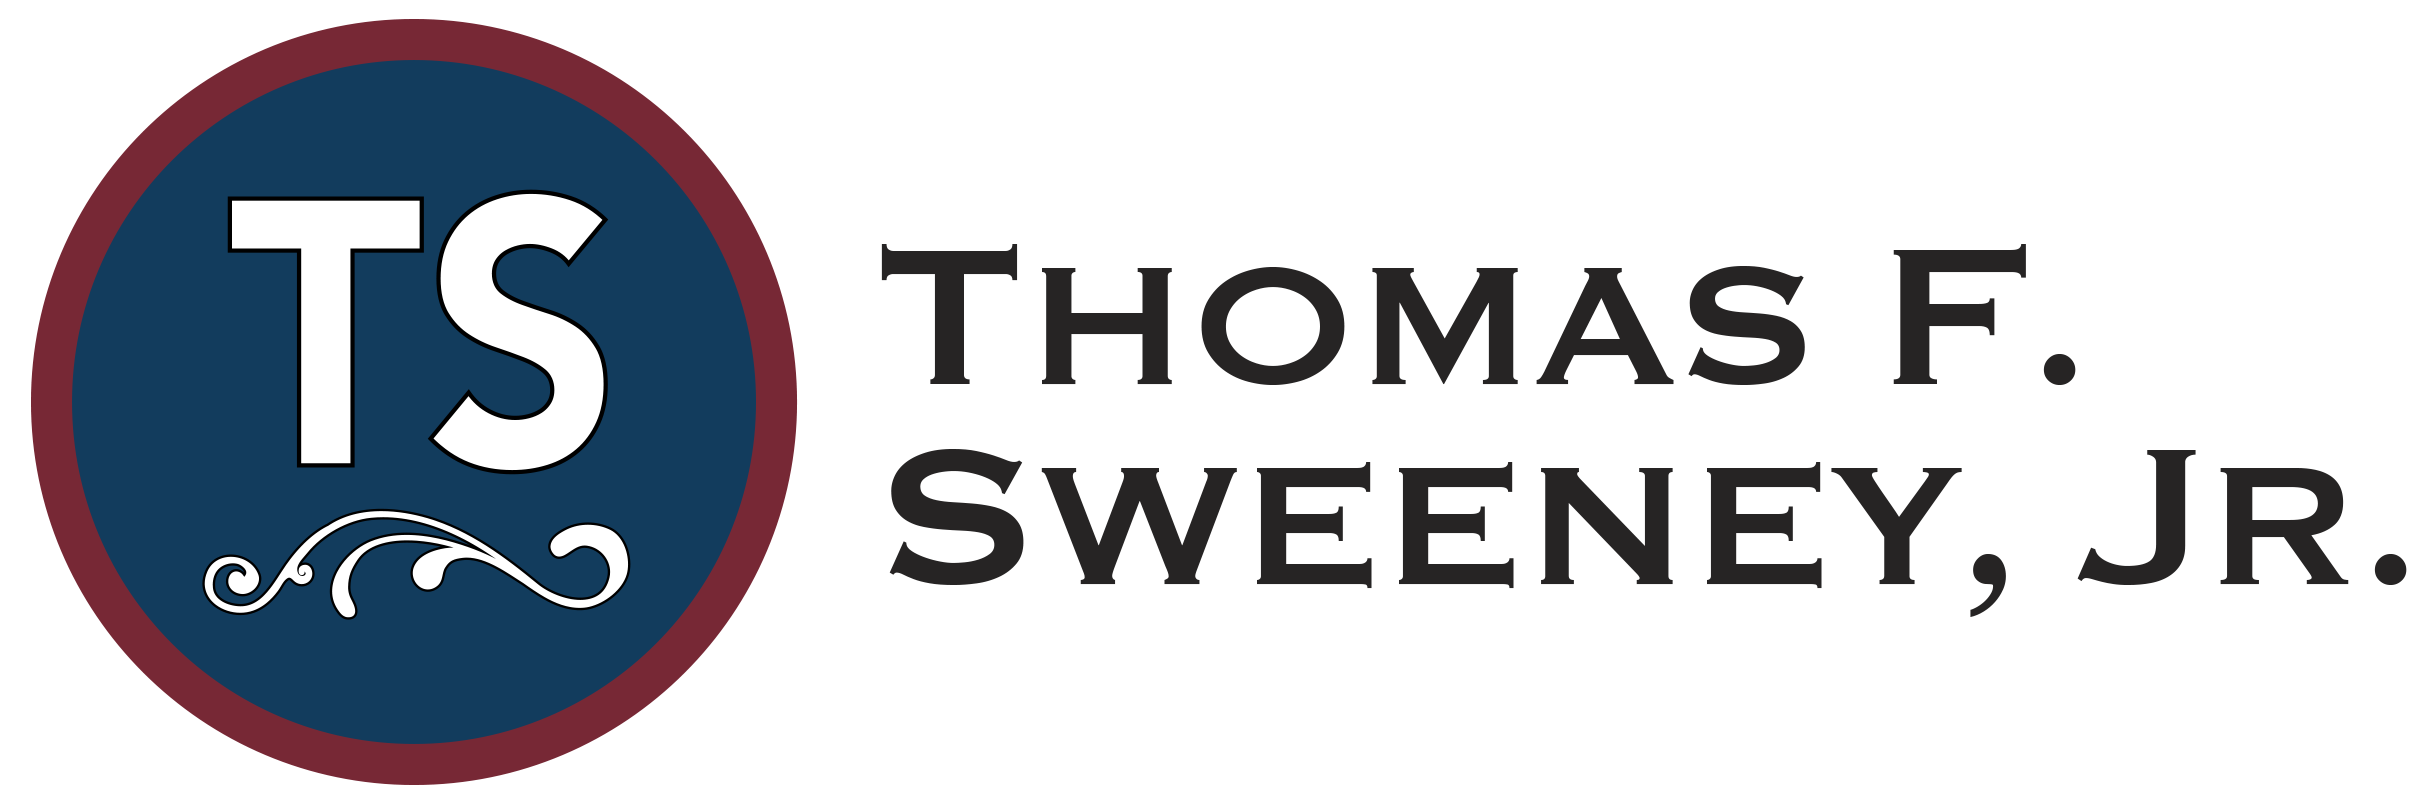 Thomas Sweeney - Website